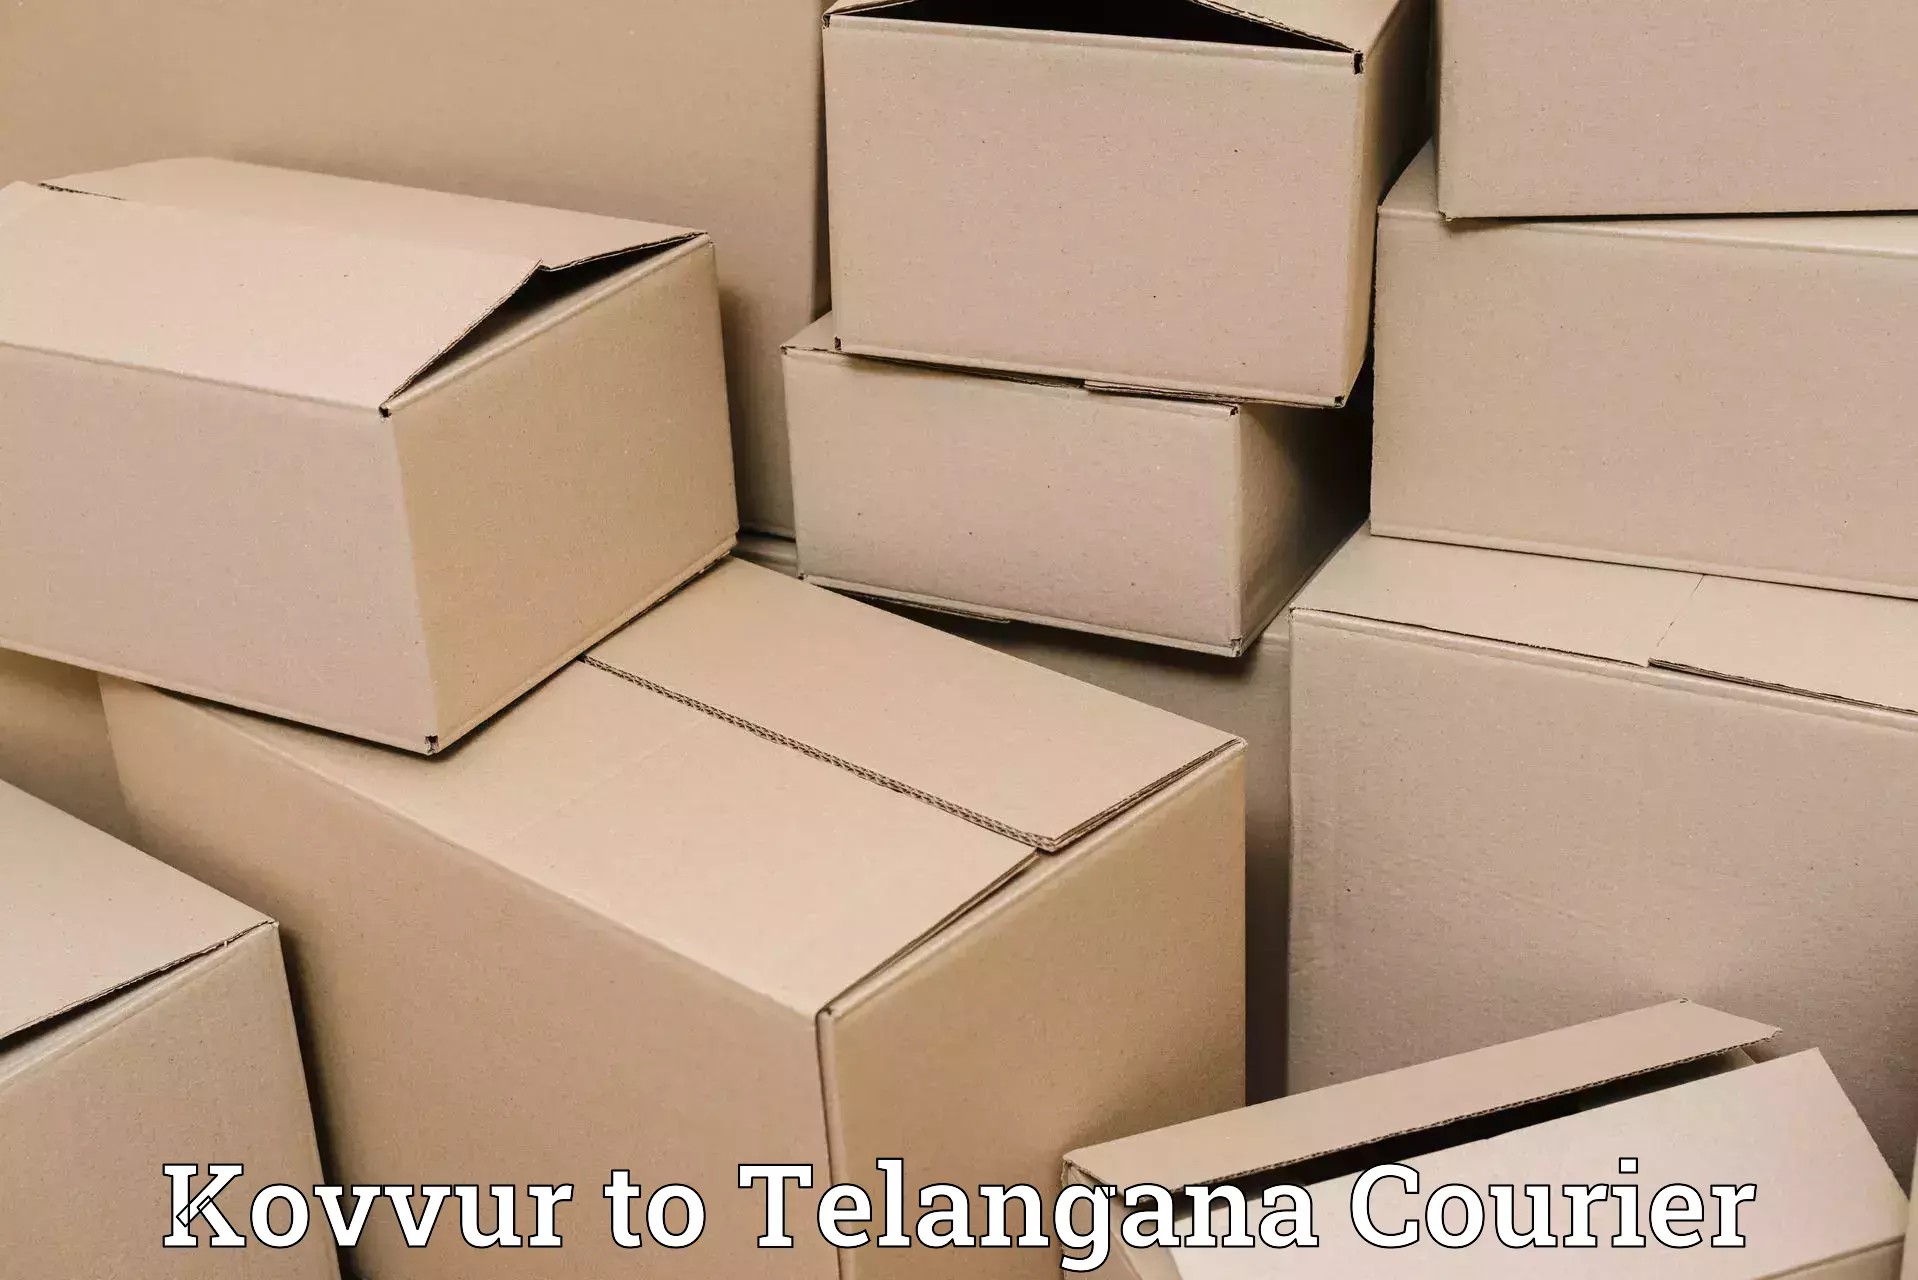 Premium courier solutions in Kovvur to Ghatkesar